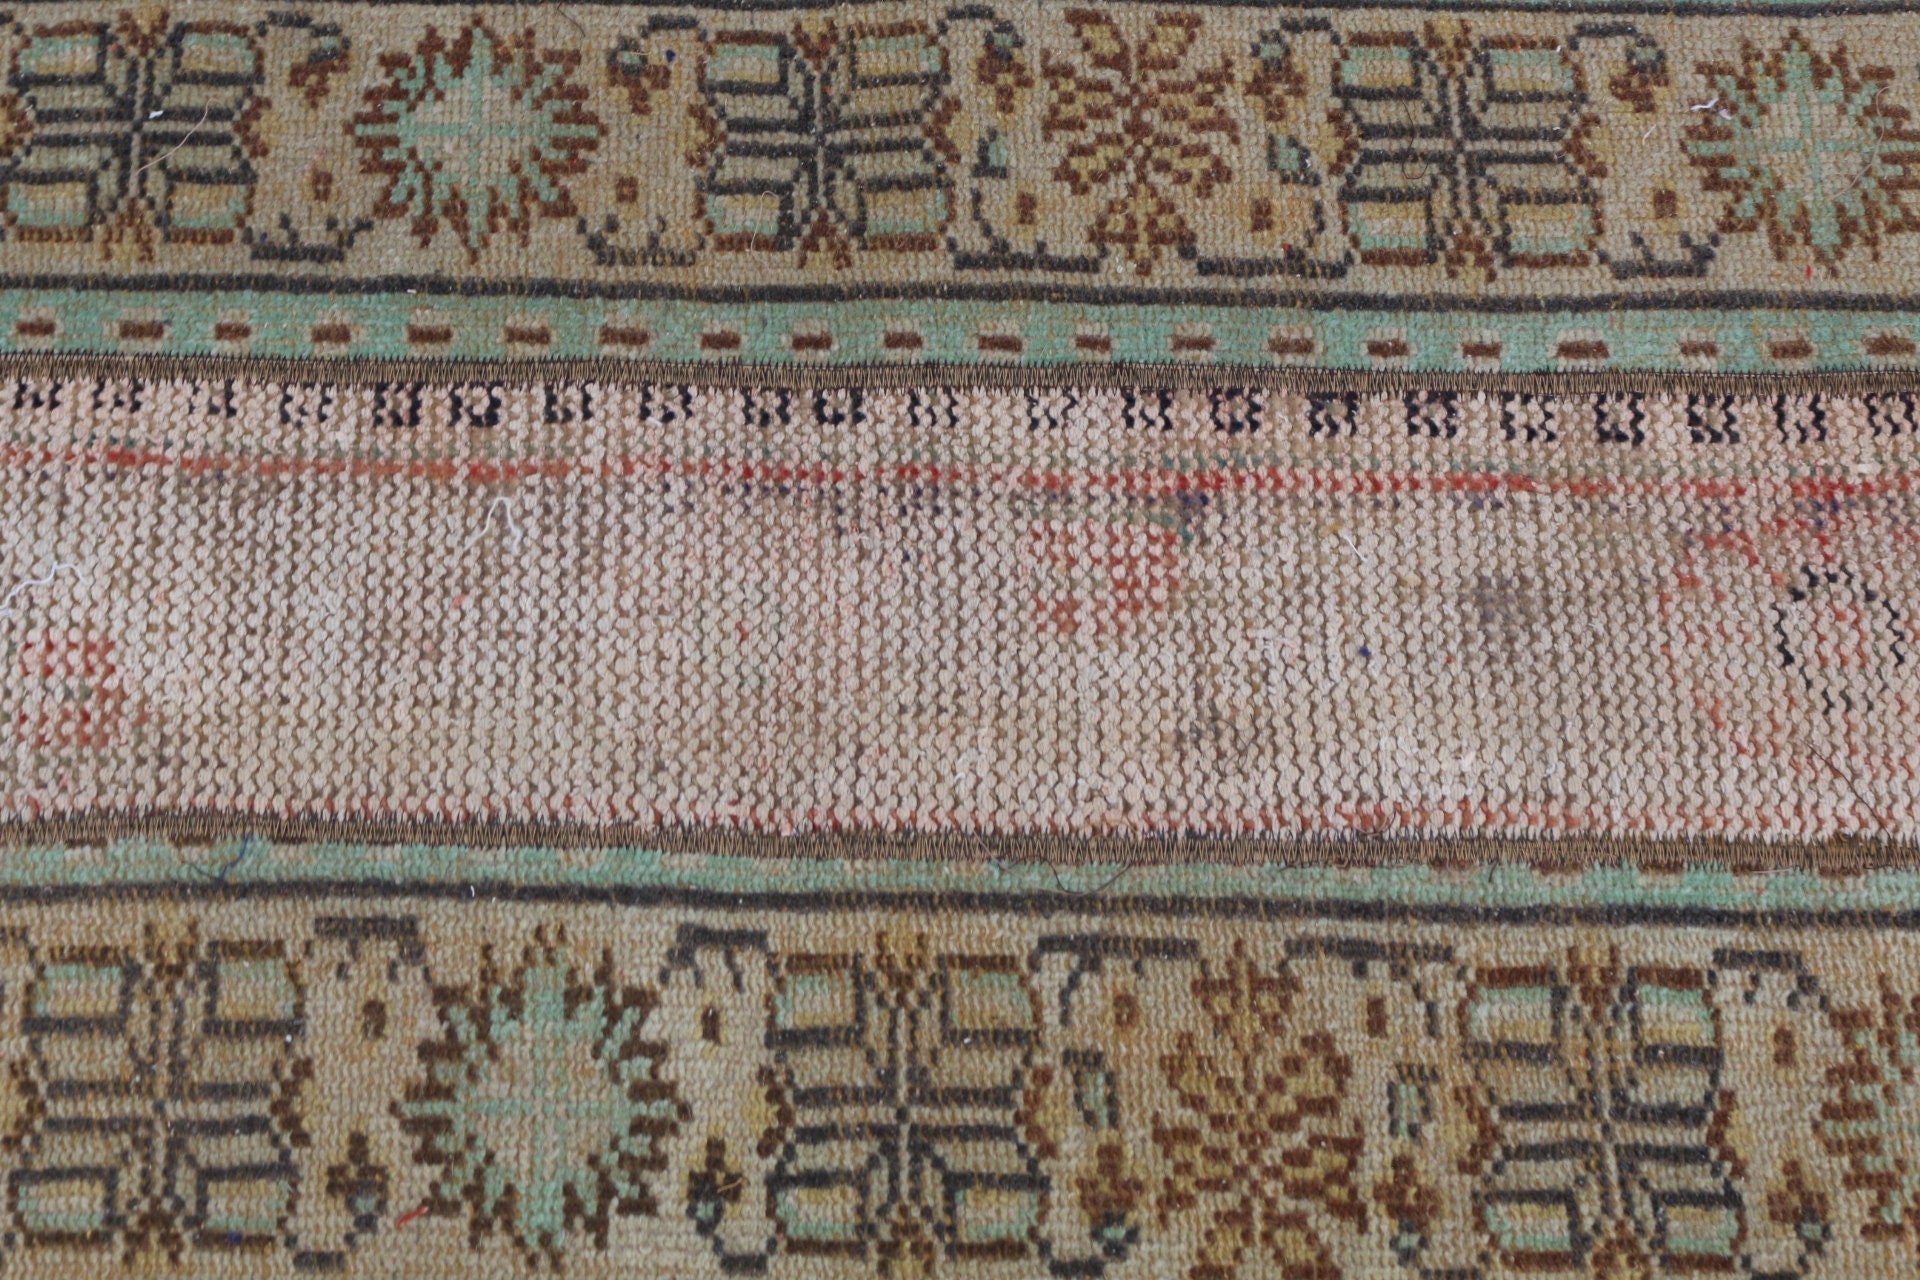 Bathroom Rug, Moroccan Rug, Oriental Rug, Turkey Rug, Wall Hanging Rugs, Vintage Rug, Green Floor Rug, 2x3.9 ft Small Rug, Turkish Rug